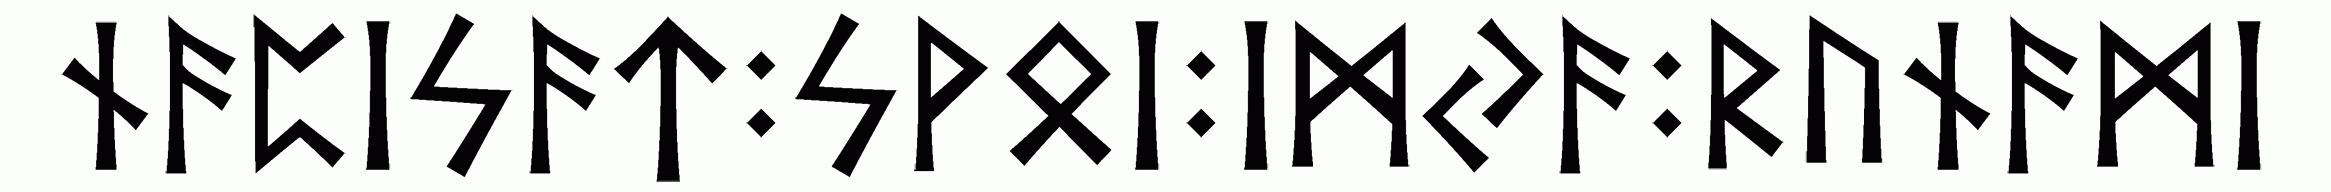 napisat+svoi+imya+runami - Напиши имя  НАПИСАТЬ+СВОИ+ИМЯ+РУНАМИ рунами  - ᚾᚨᛈᛁᛋᚨᛏ:ᛋᚹᛟᛁ:ᛁᛗᛃᚨ:ᚱᚢᚾᚨᛗᛁ - Значение и характер имени  НАПИСАТЬ+СВОИ+ИМЯ+РУНАМИ - 